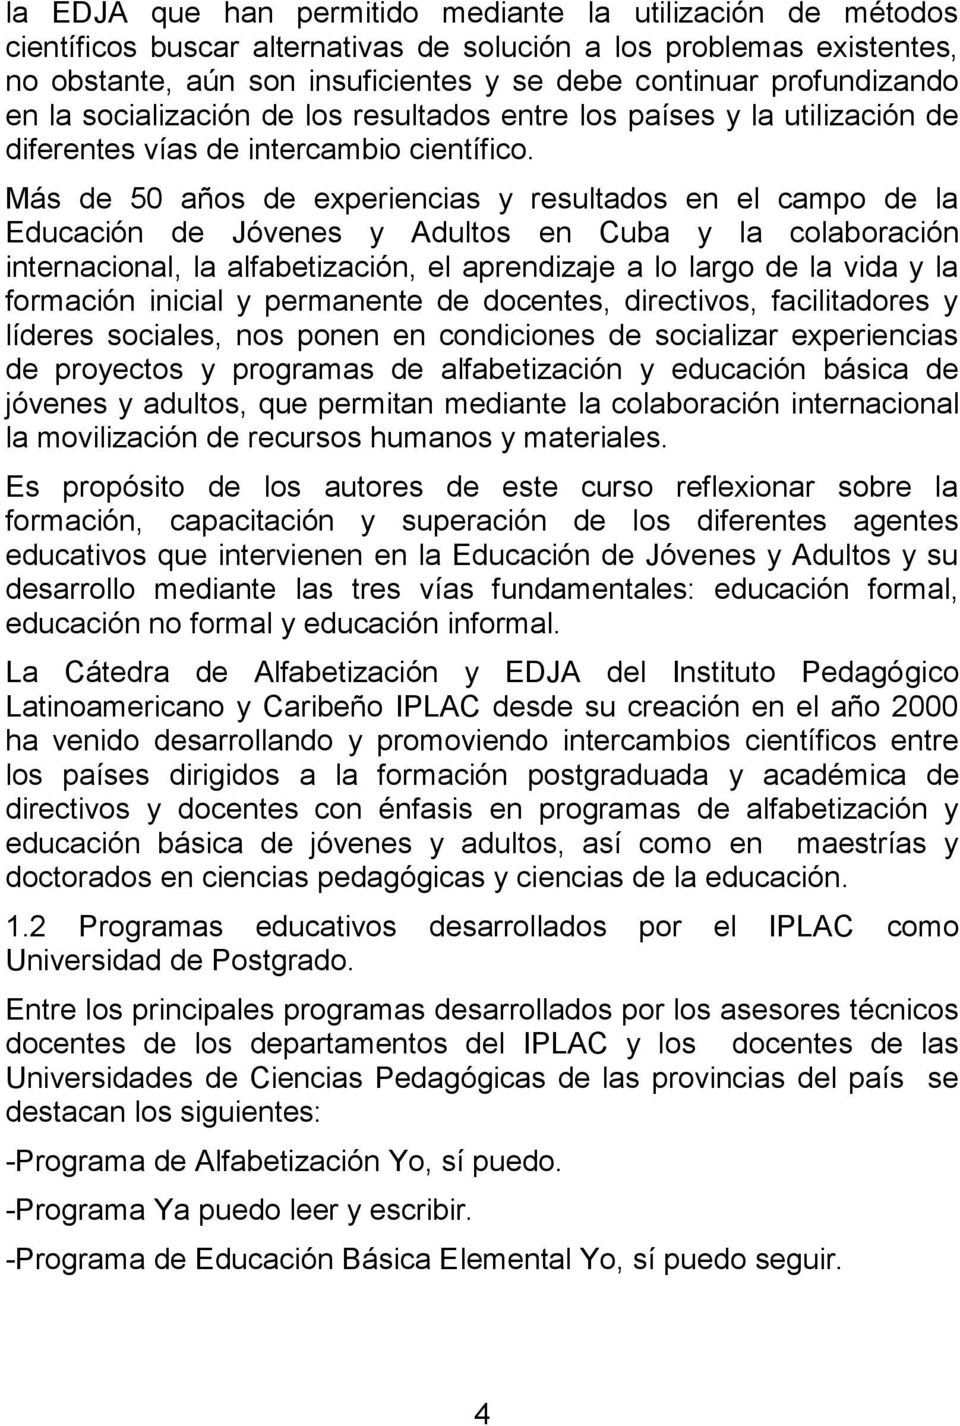 Más de 50 años de experiencias y resultados en el campo de la Educación de Jóvenes y Adultos en Cuba y la colaboración internacional, la alfabetización, el aprendizaje a lo largo de la vida y la